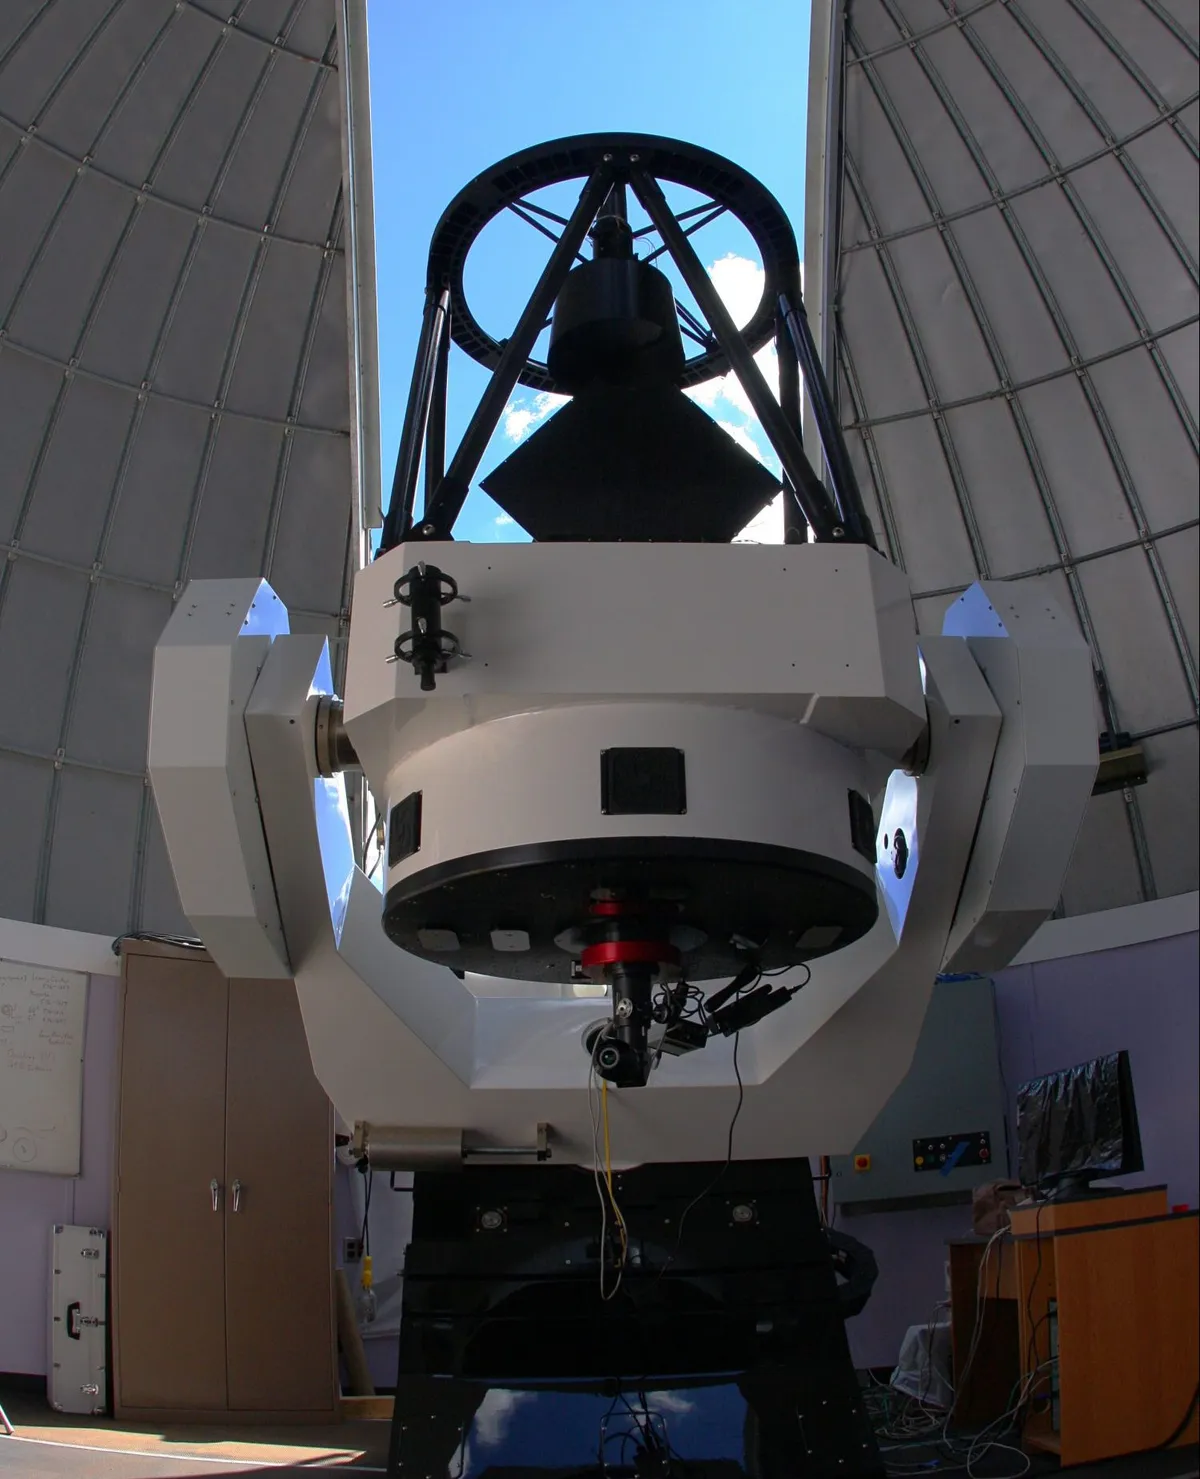 The Schulman 32-inch remote telescope